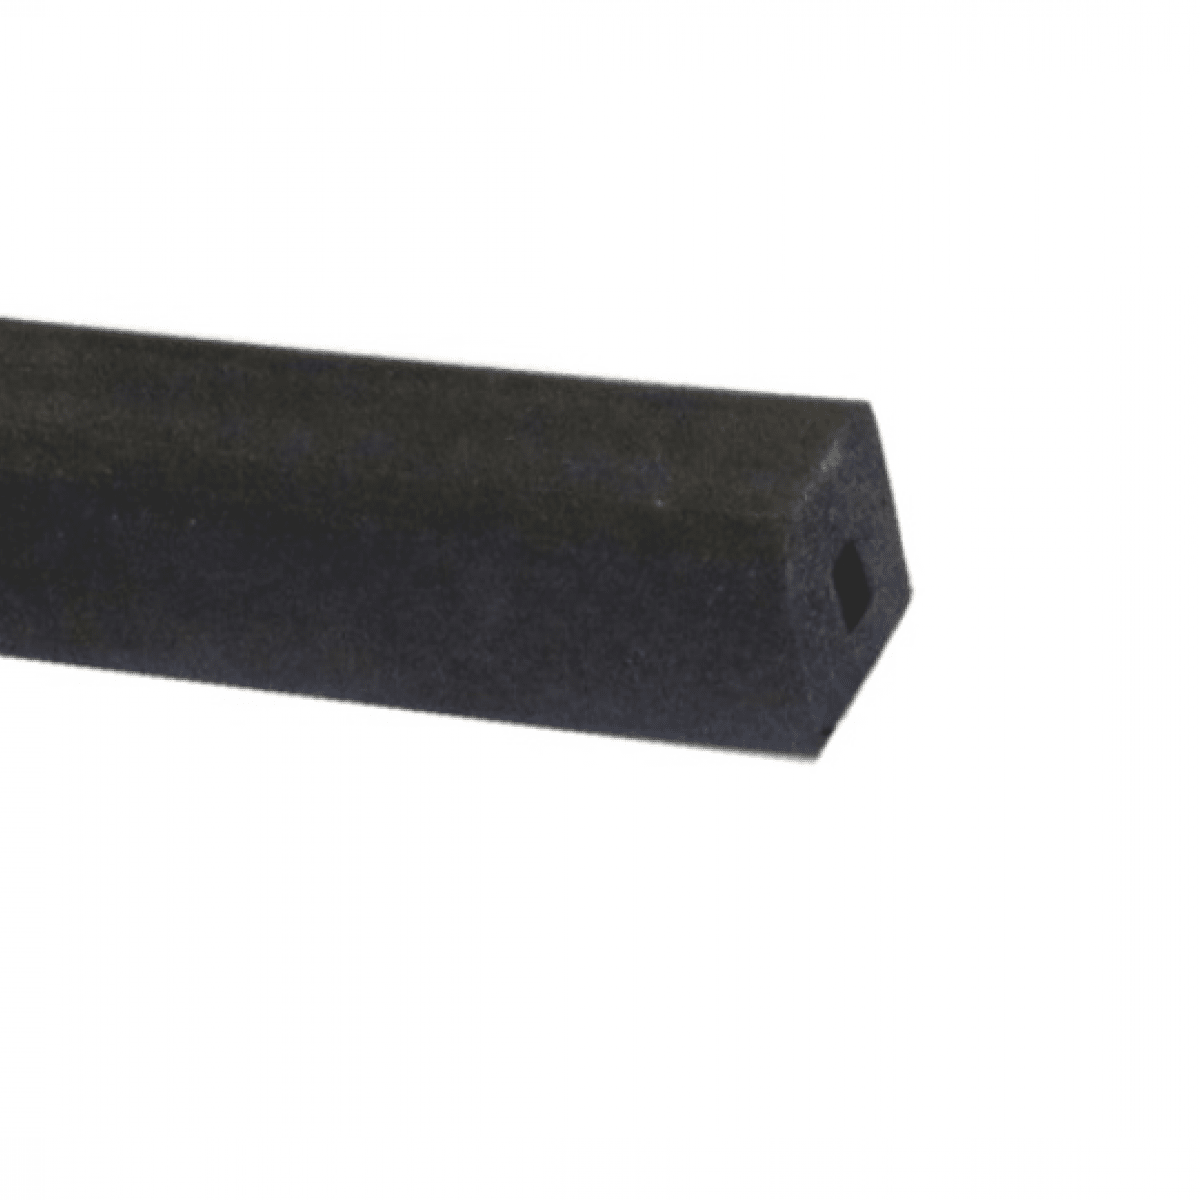 Mikroprofil štvorec s dutinkou 22x22mm, -30°C/+80°C, čierny